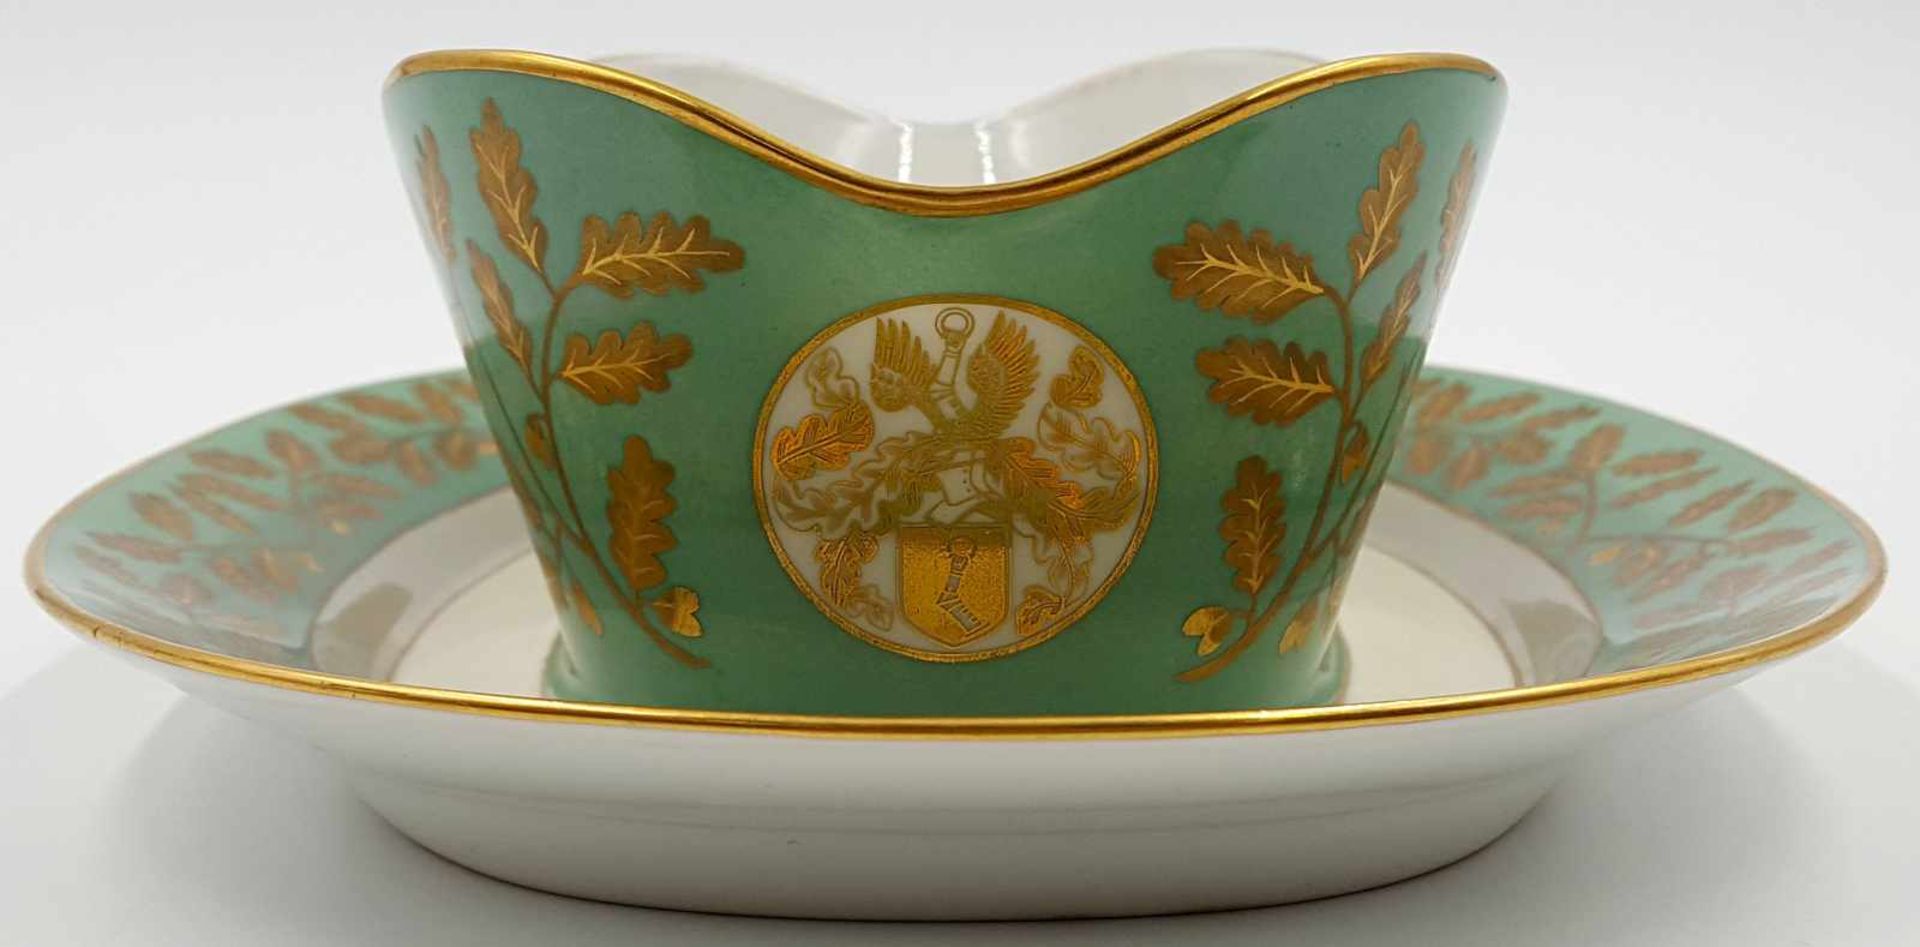 Sevres porcelain. France. Saucer "Sèvres 43" " 'Reichskreuz' "< - Image 4 of 9